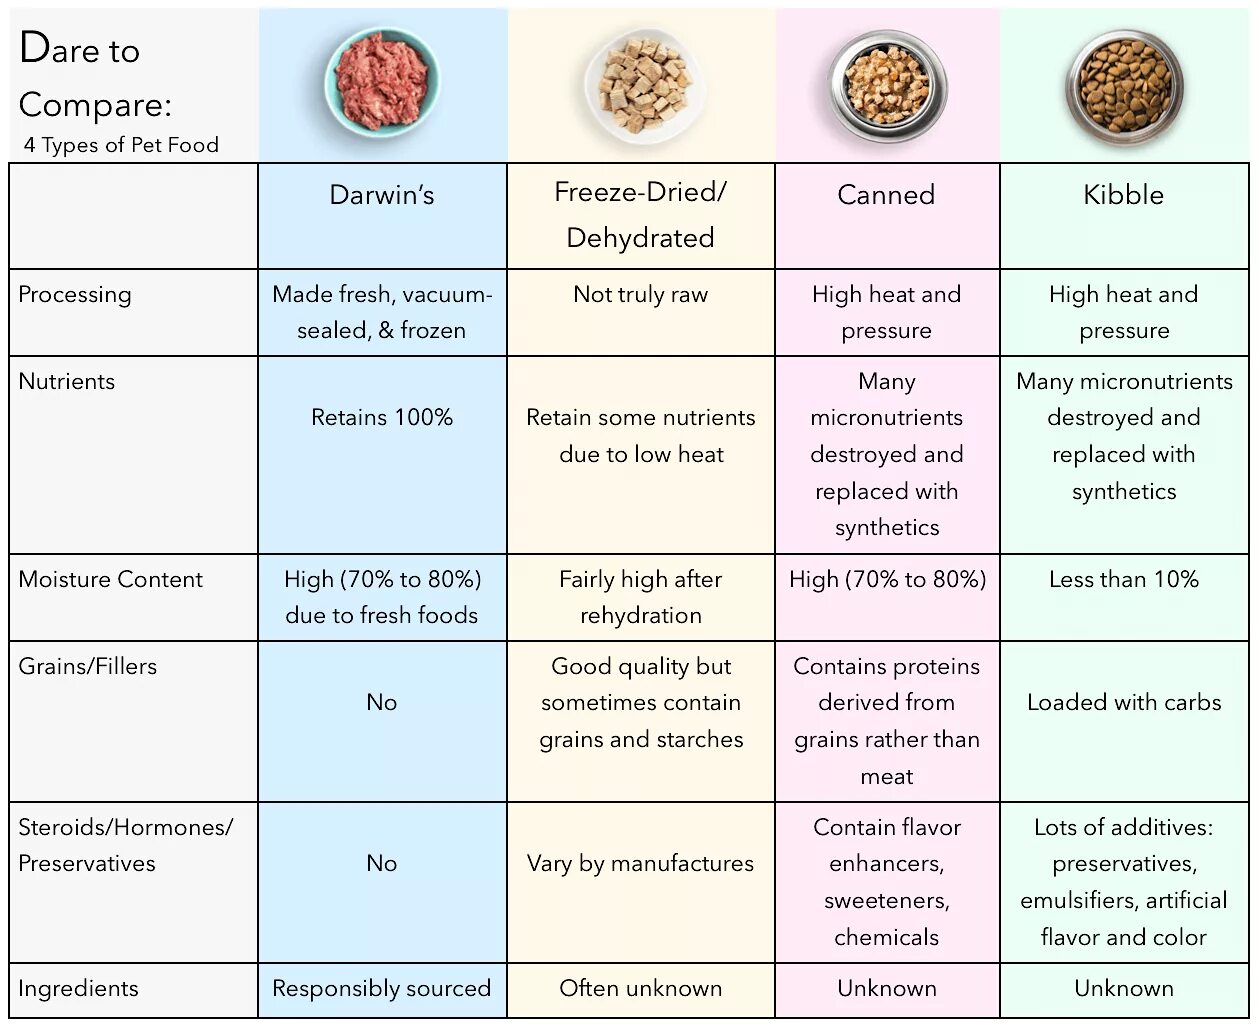 Comparing Cat food. Какая категория продуктов Dry. Категории в менеджменте Dry food. Dry food категории FMCG. Type of pet